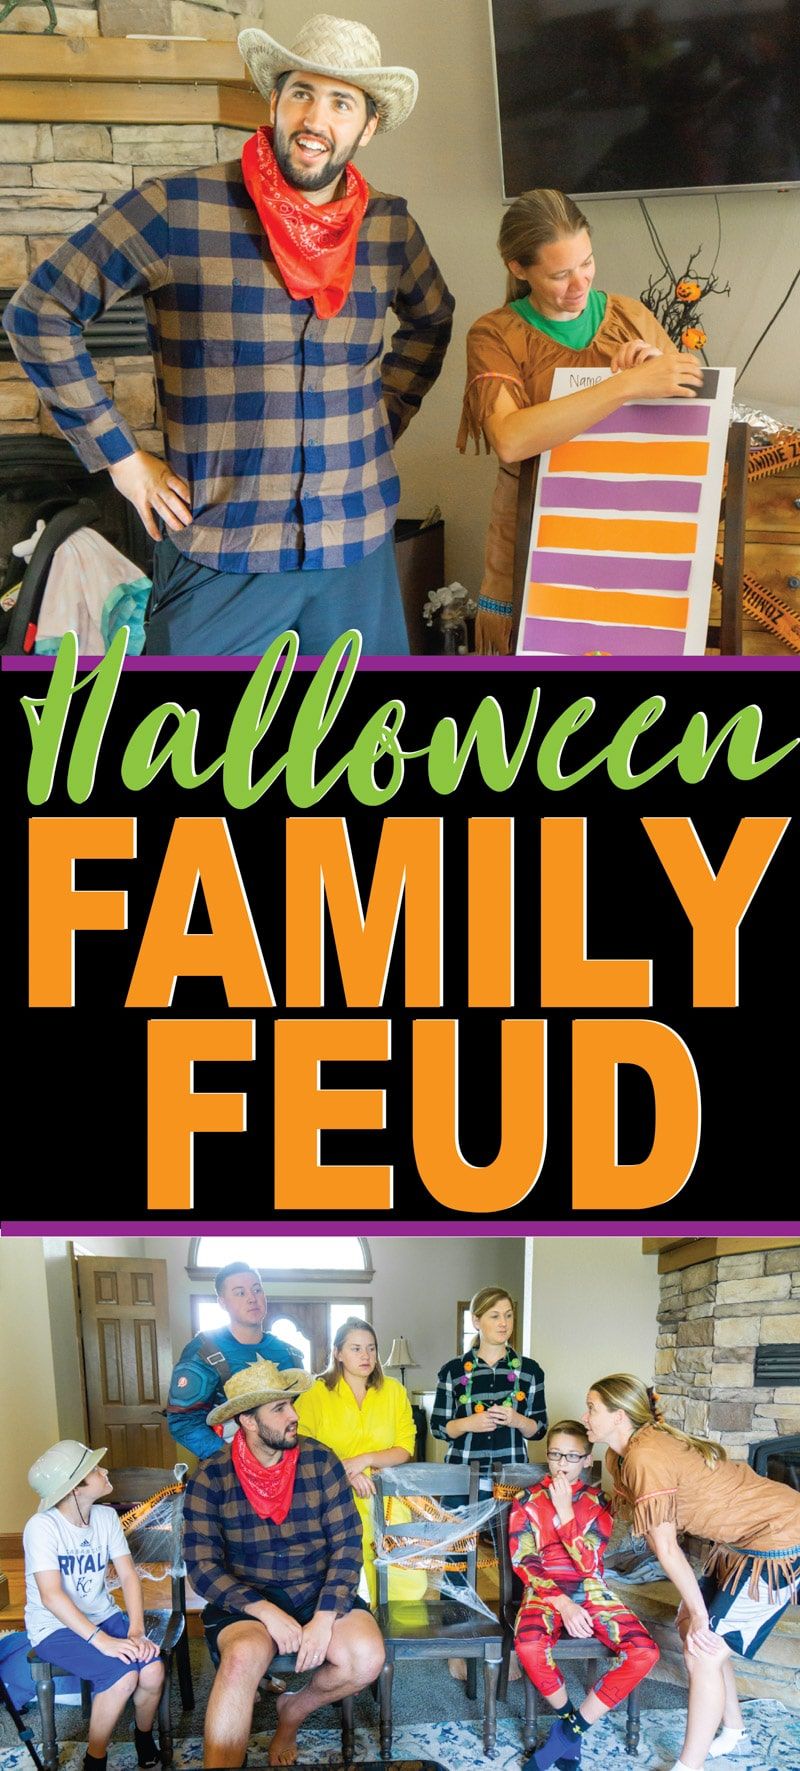 DIY Halloween rodinný spor doplněný vtipnými otázkami pro děti i dospělé! Ideální pro halloweenskou párty nebo jen halloweenskou hru, kterou si můžete zahrát s rodinou! Jedna z nejzábavnějších halloweenských her!